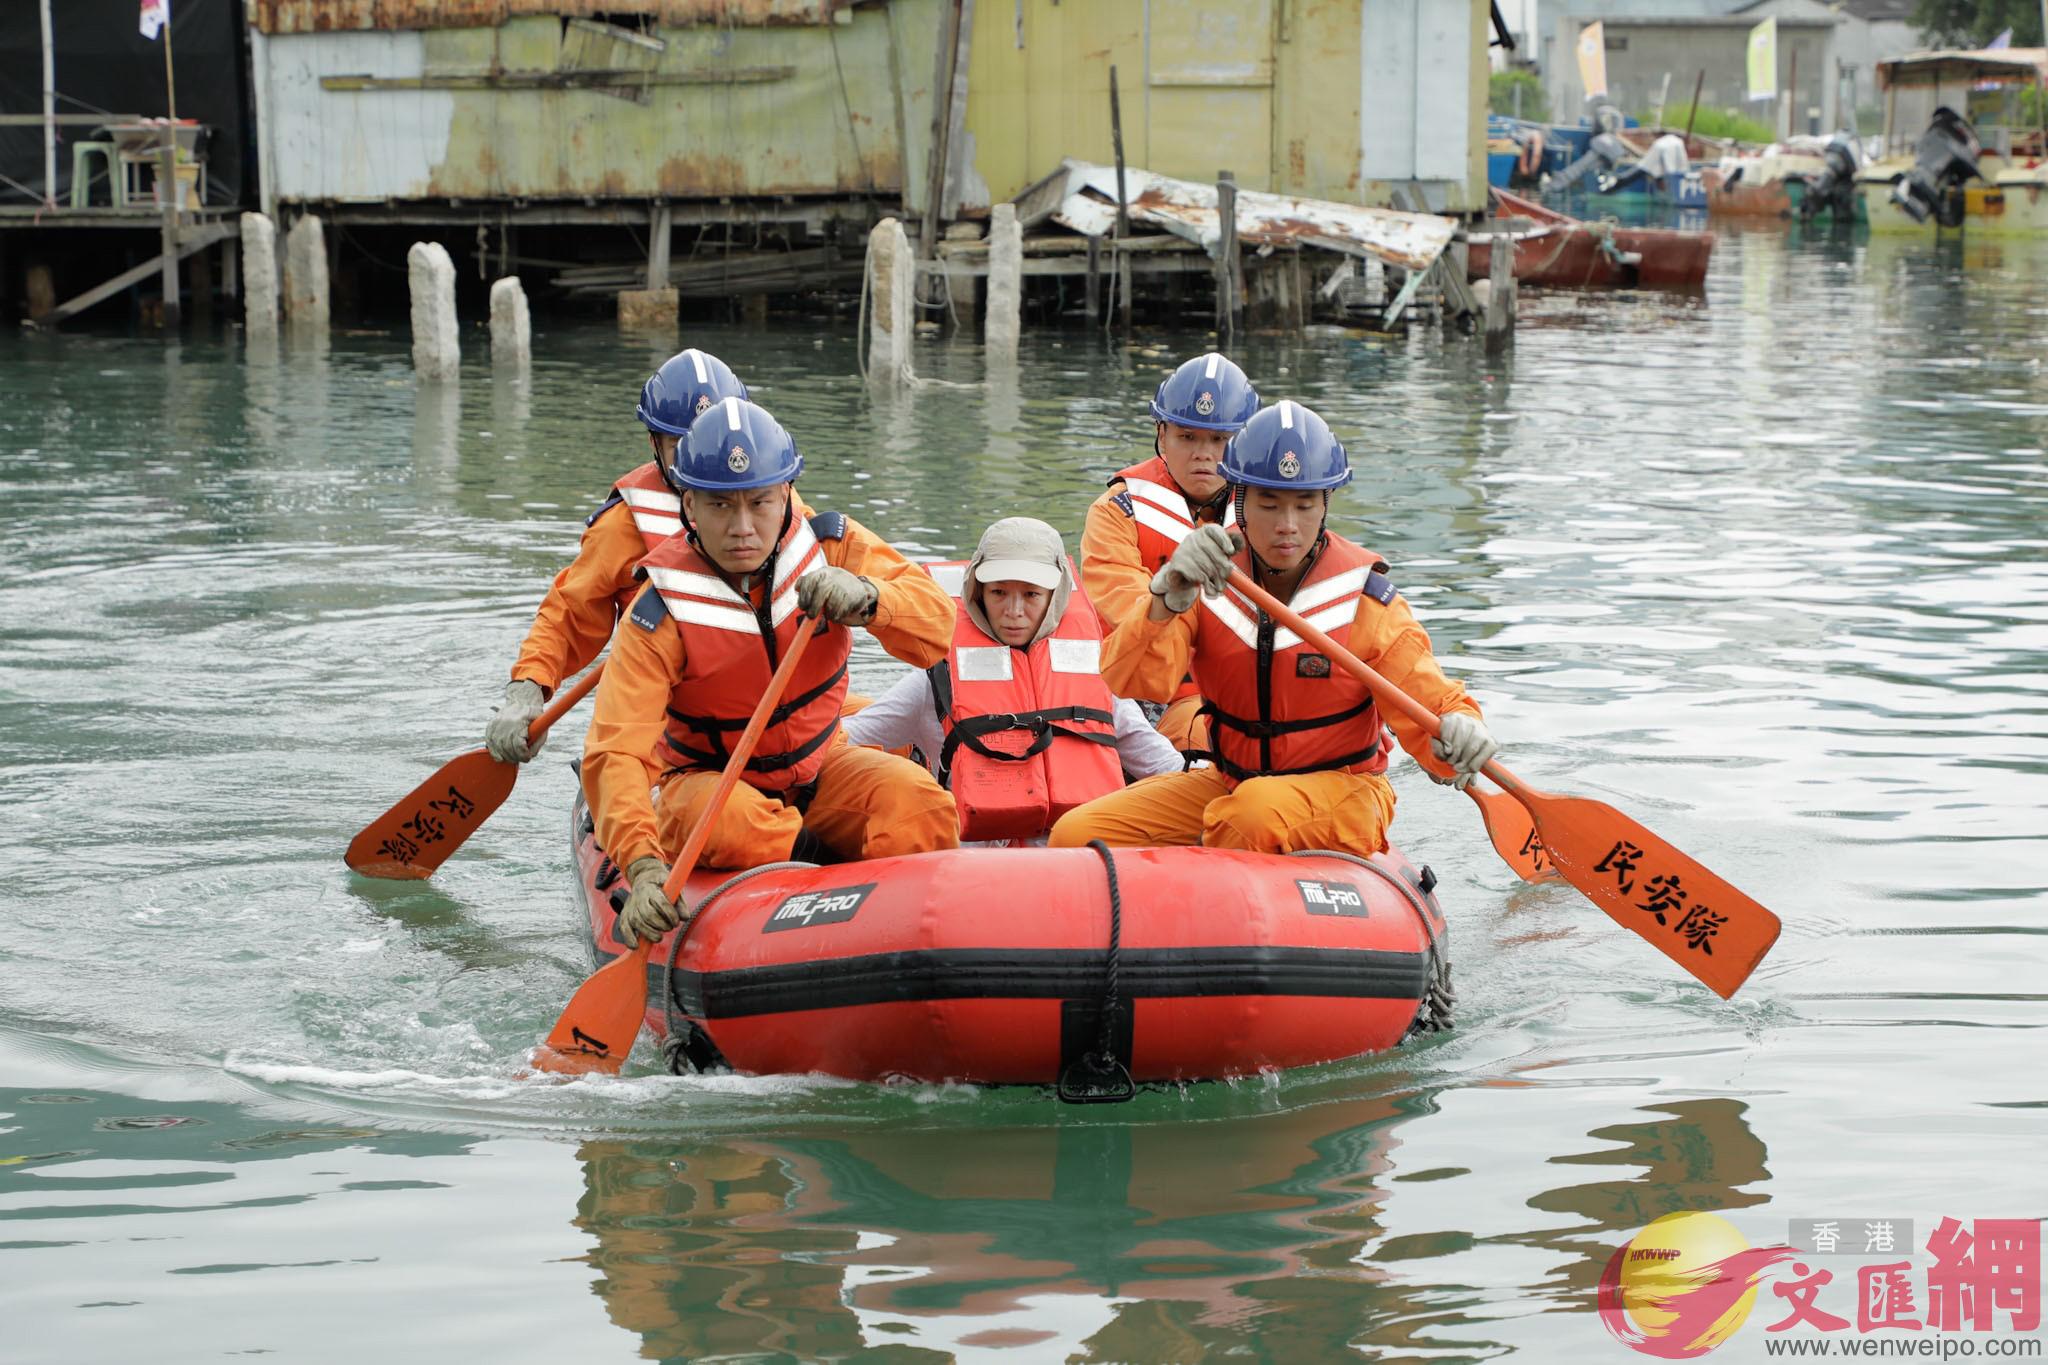 民安隊隊員在演練中利用橡皮艇拯救被困居民